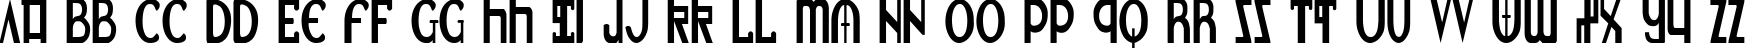 Пример написания английского алфавита шрифтом Lionheart Condensed